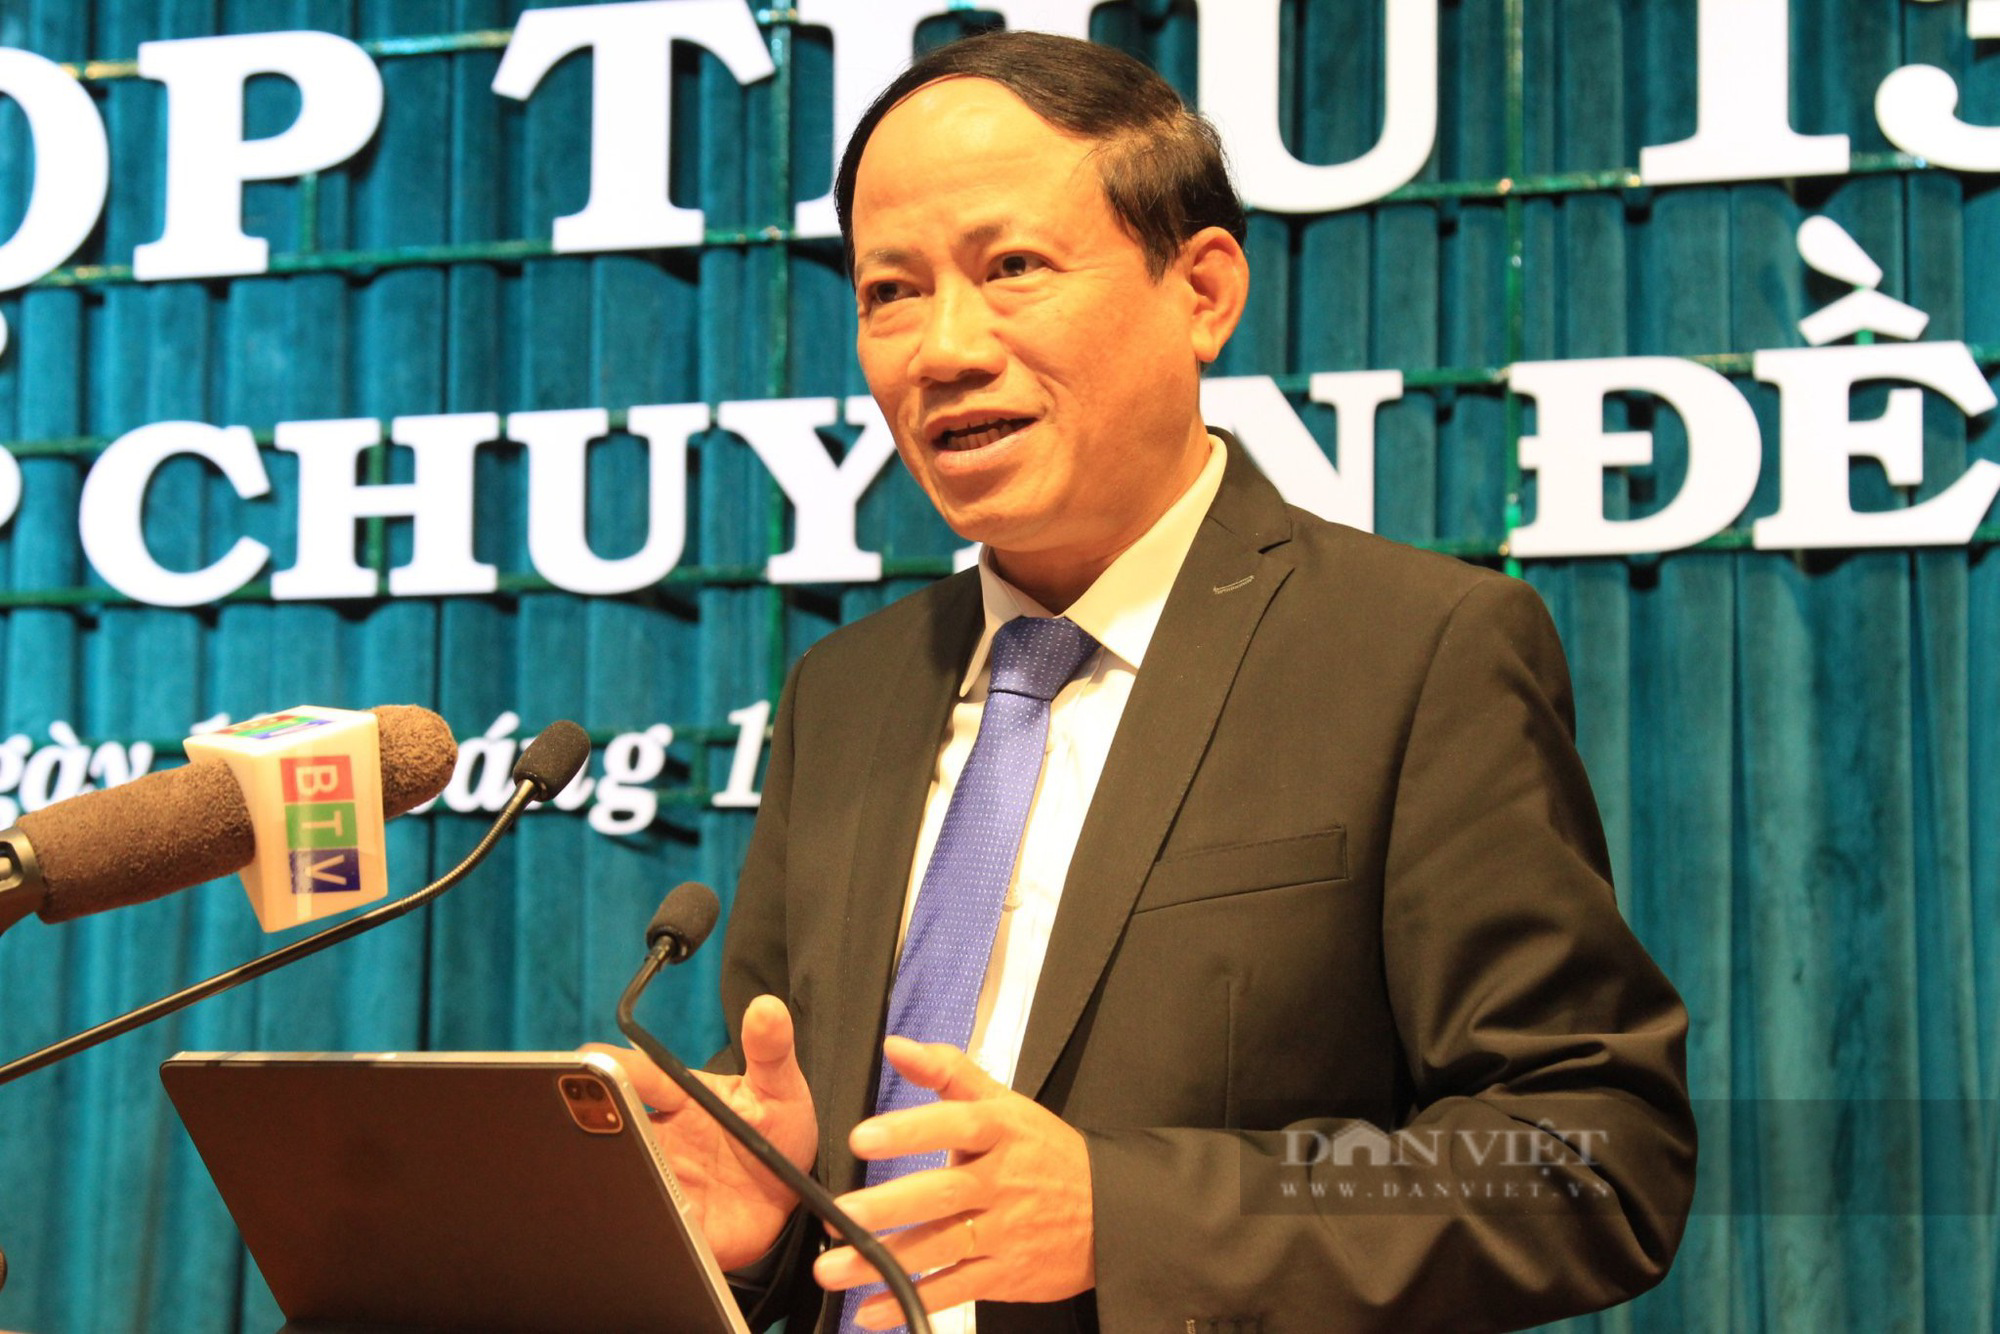 Chủ tịch Bình Định: 'Không đề xuất nhân sự suy thoái đạo đức, giữ chức vụ lãnh đạo, quản lý' - Ảnh 1.